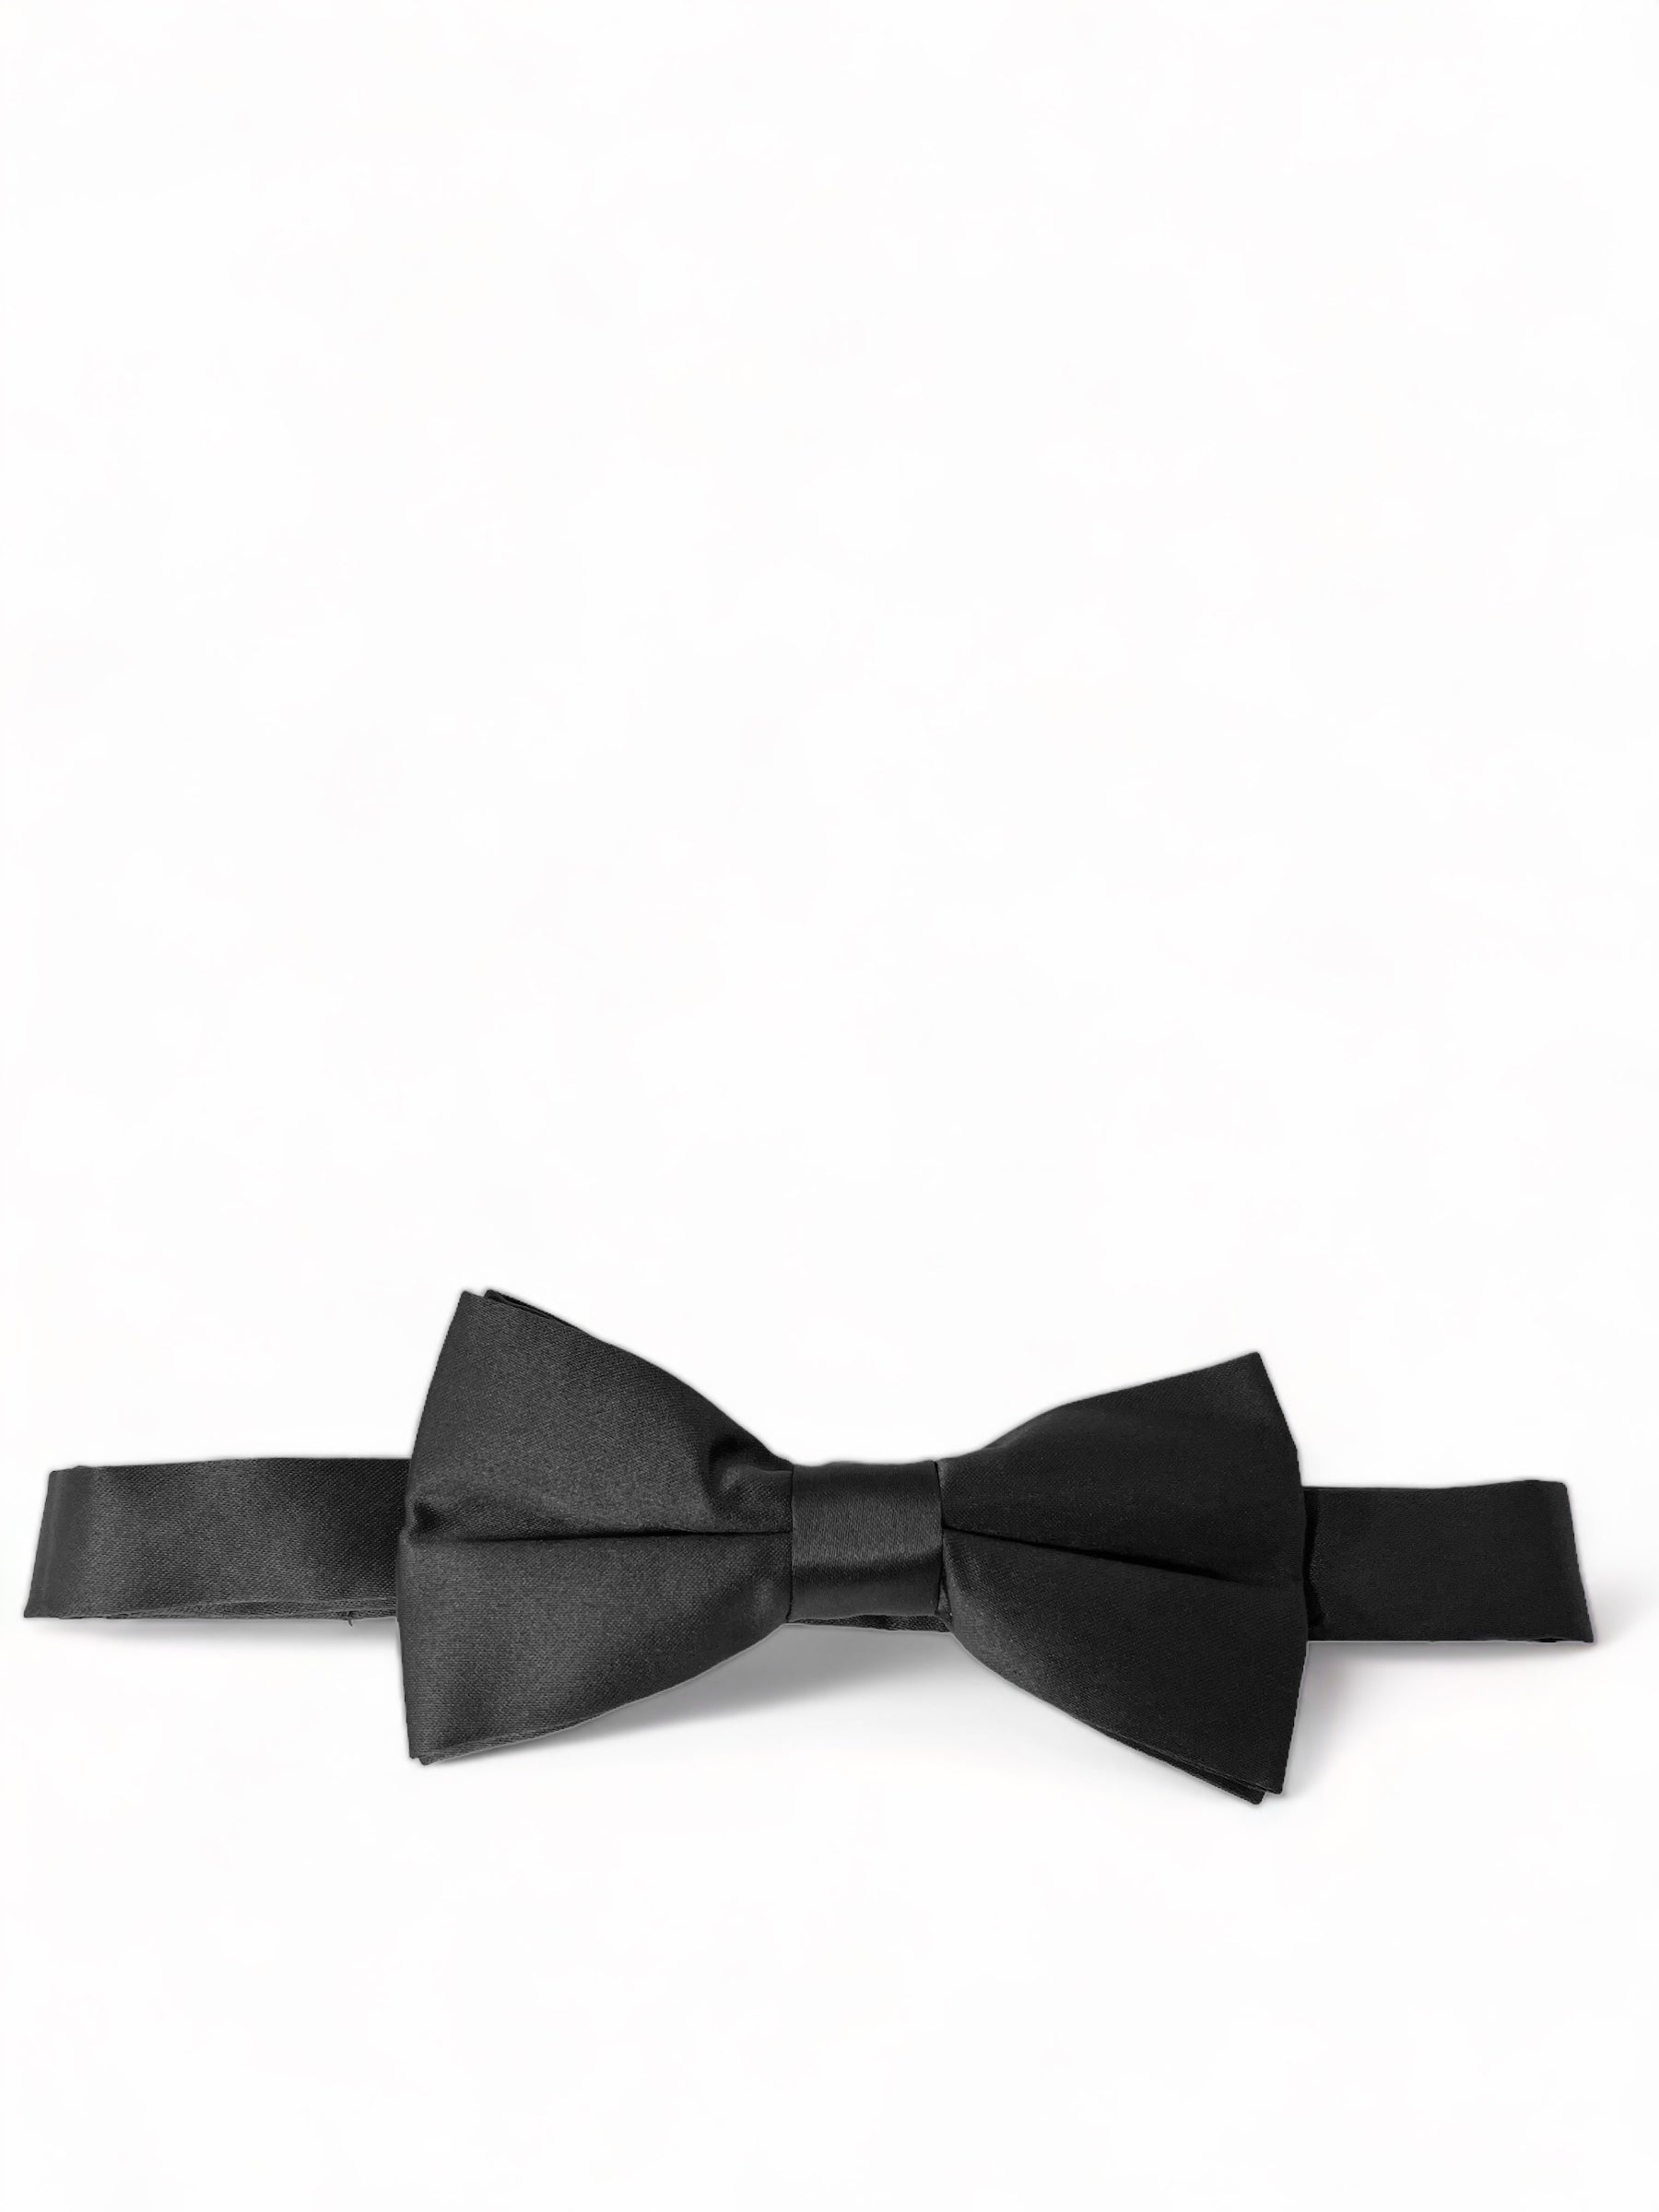 Solid Black Pre-Tied Bow Tie